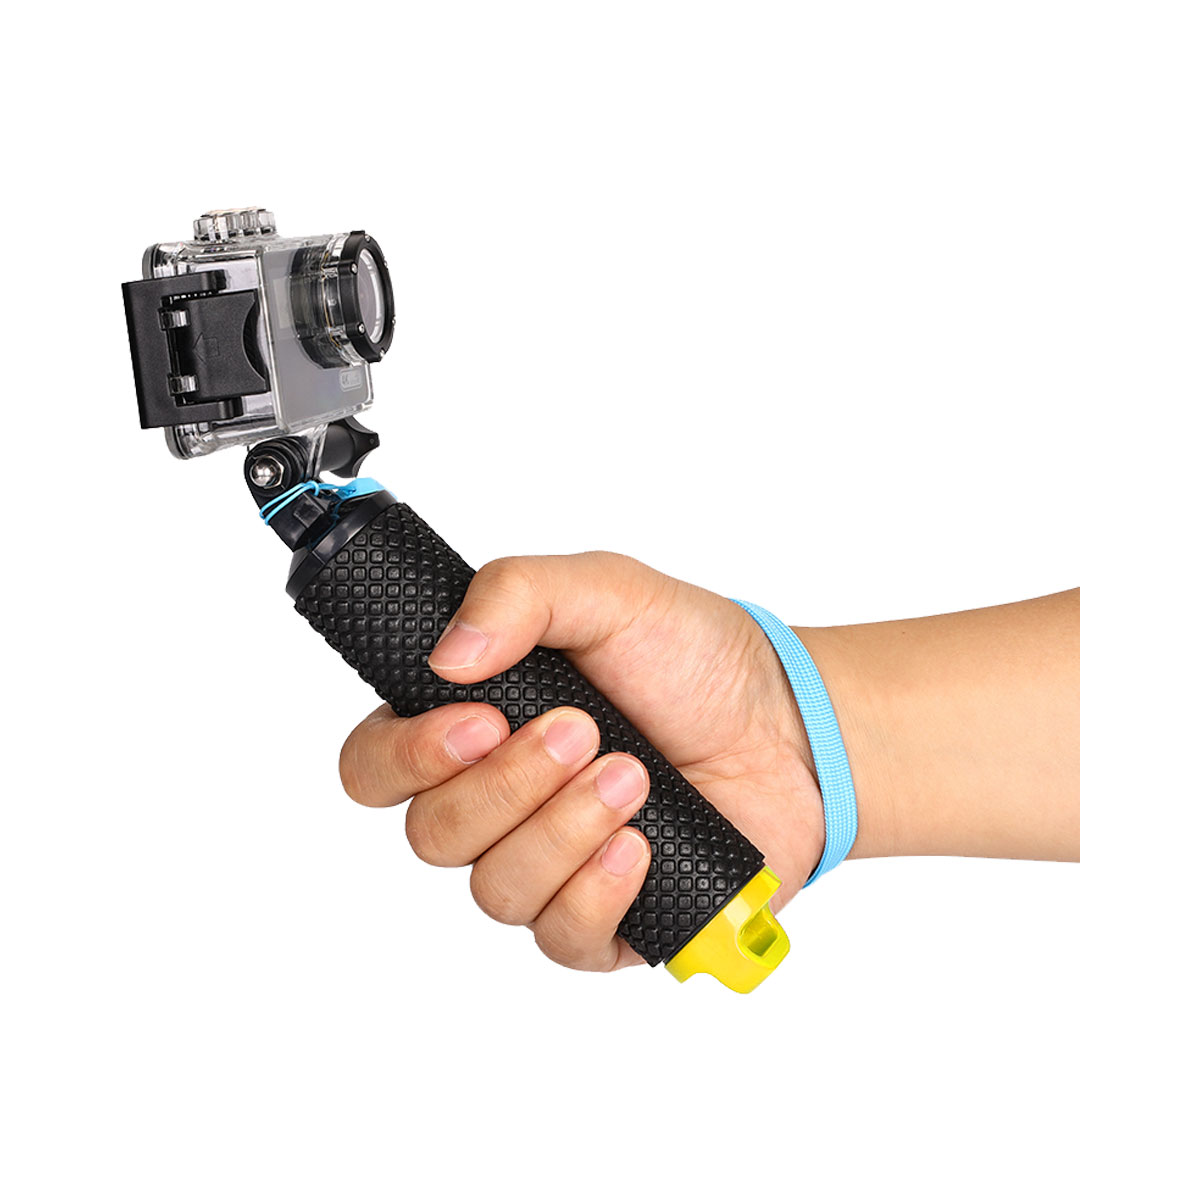 Technika - Bobber Floating Hand Grip for GoPro HERO